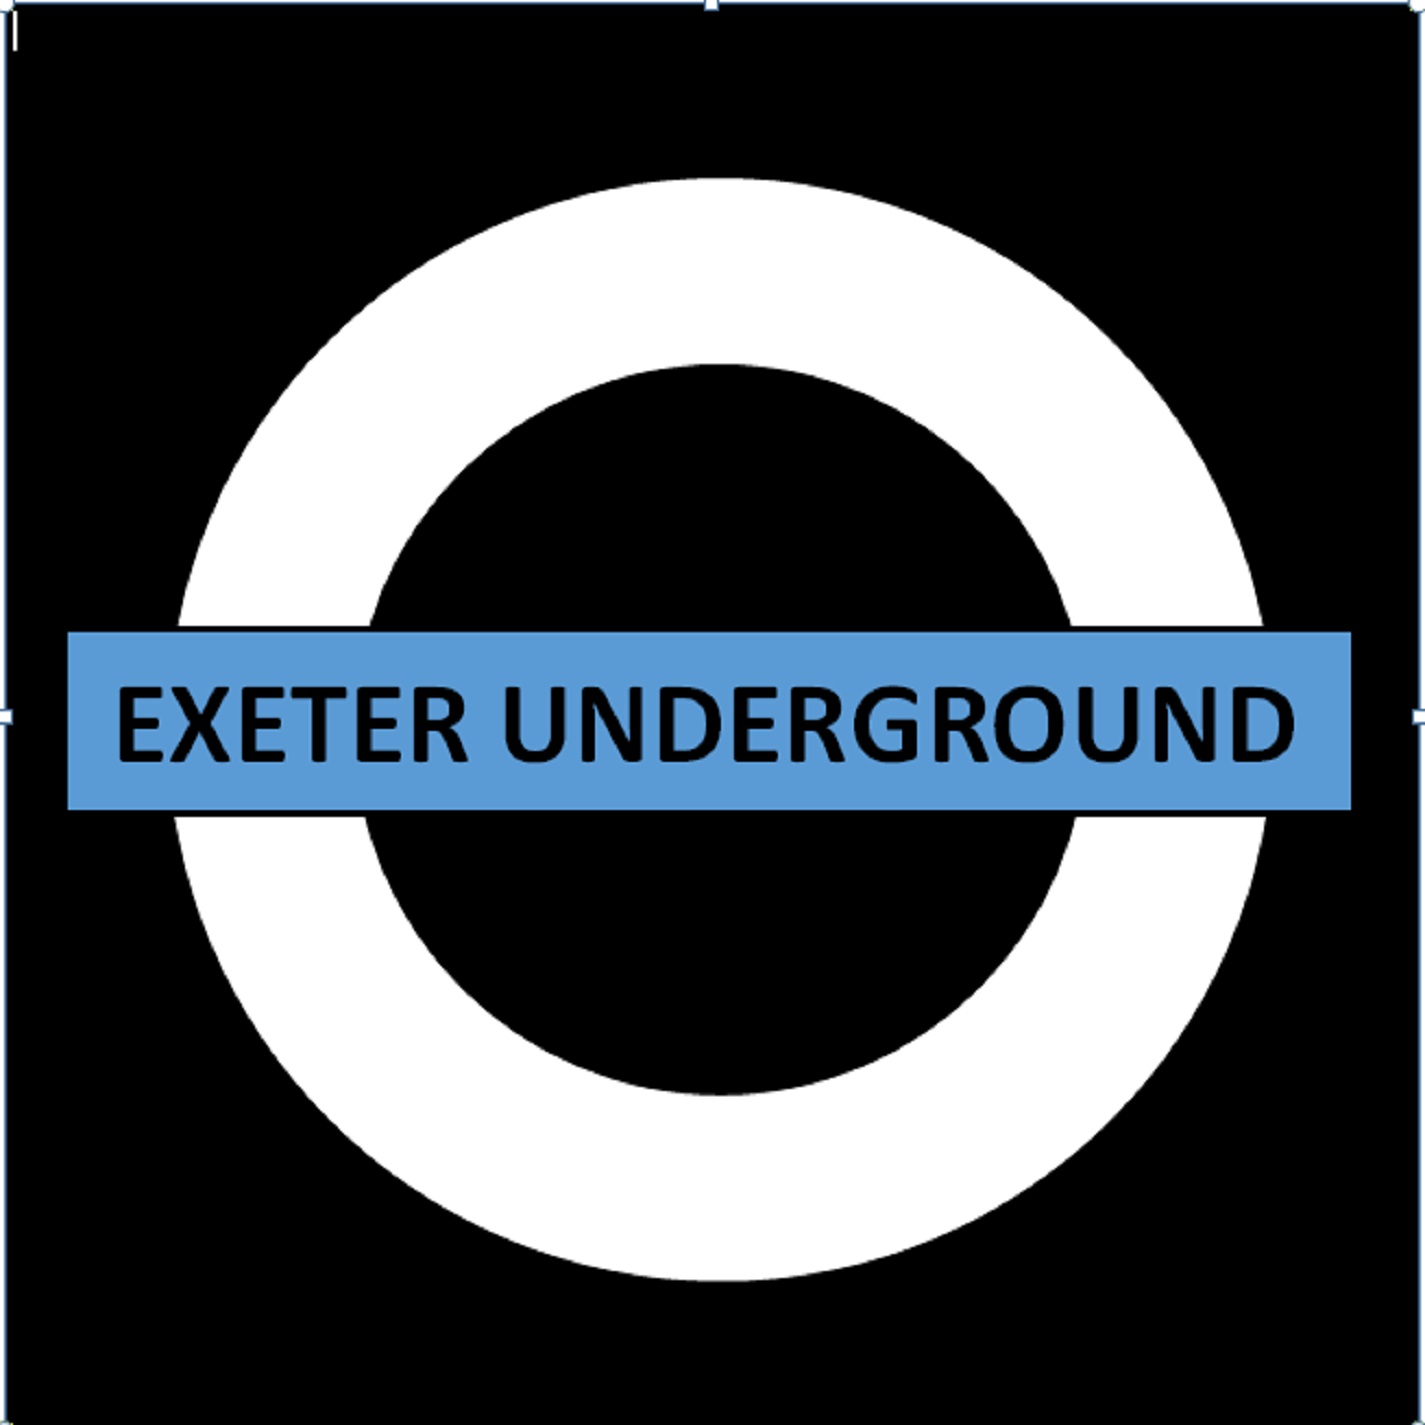 Artwork for Exeter Underground